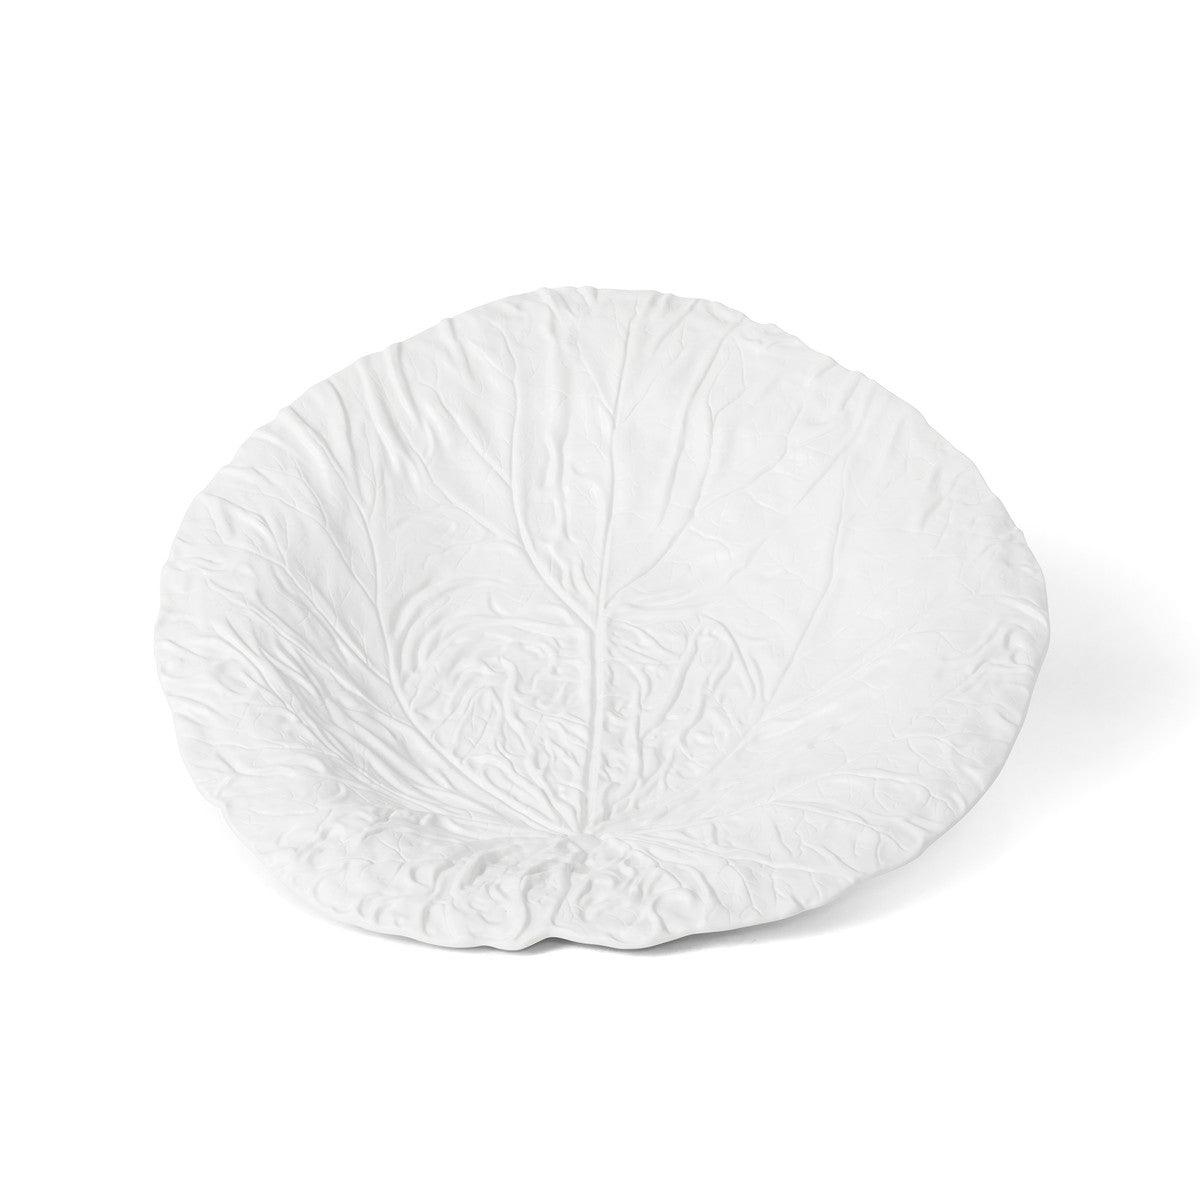 White Cabbage Leaf Ceramic Serving Platter, 20" Dia. - Signastyle Boutique